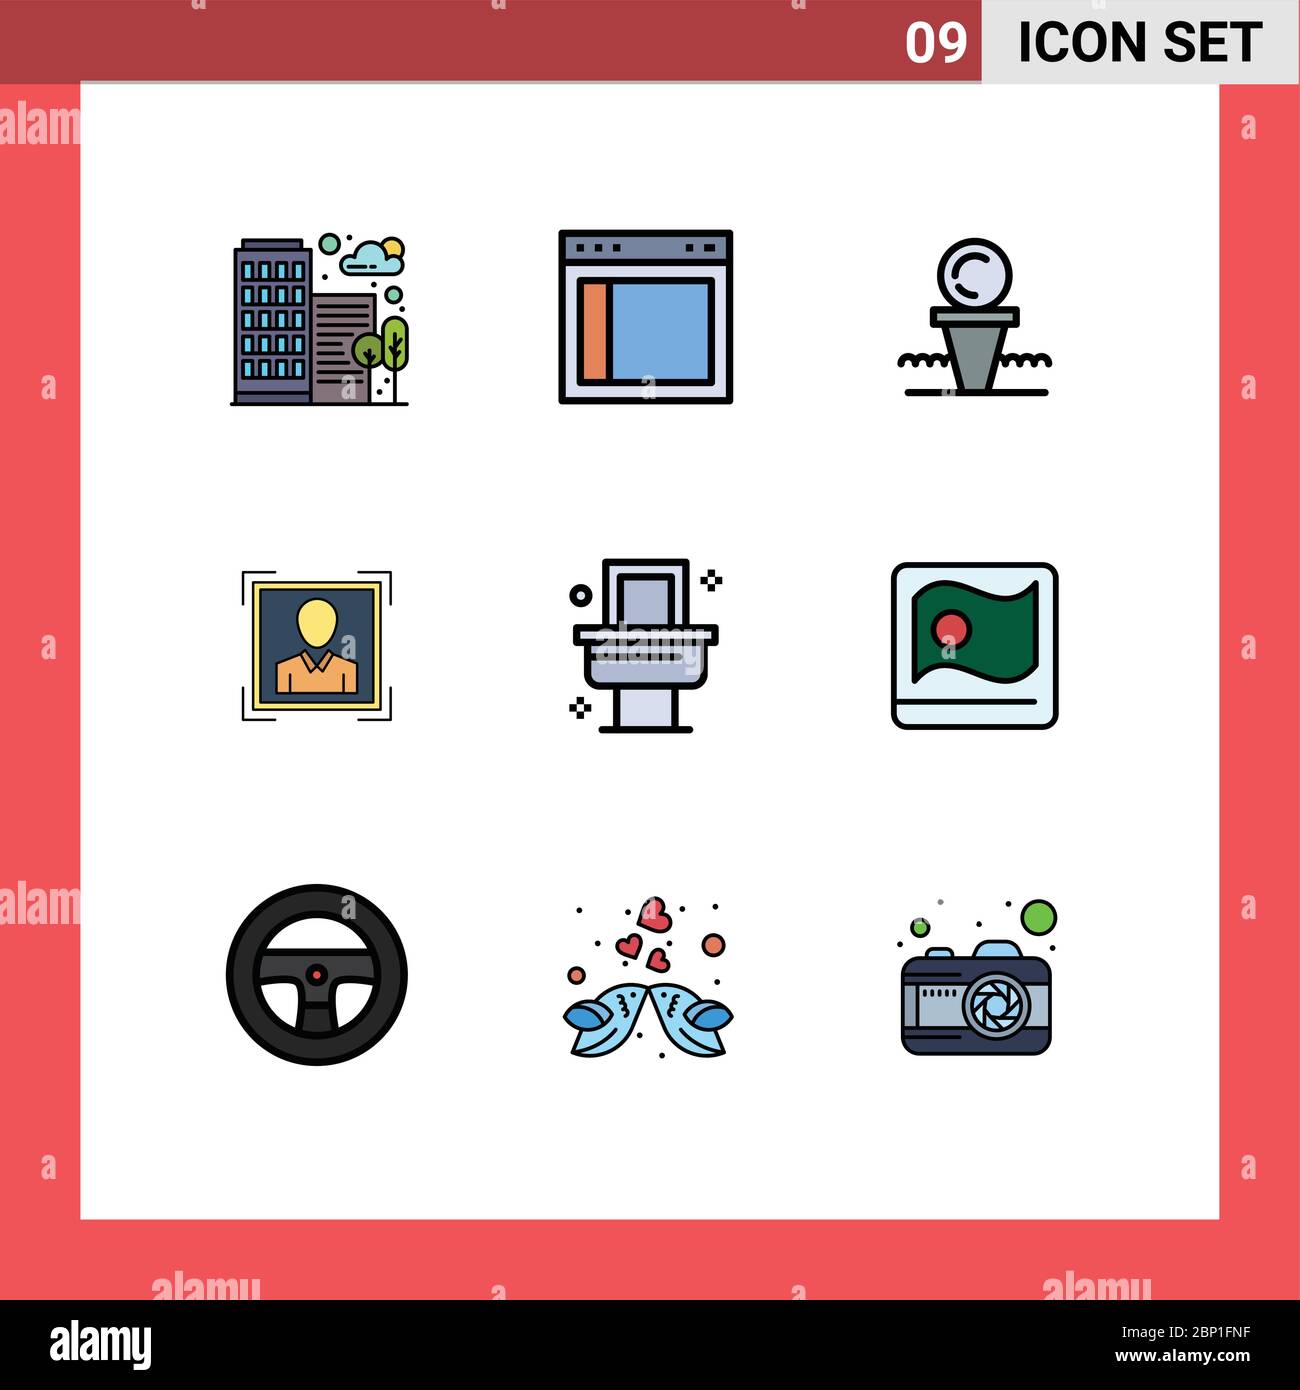 9 icônes créatives signes et symboles modernes de l'image de profil, ID utilisateur, site Web, utilisateur, HIT Editable Vector Design Elements Illustration de Vecteur